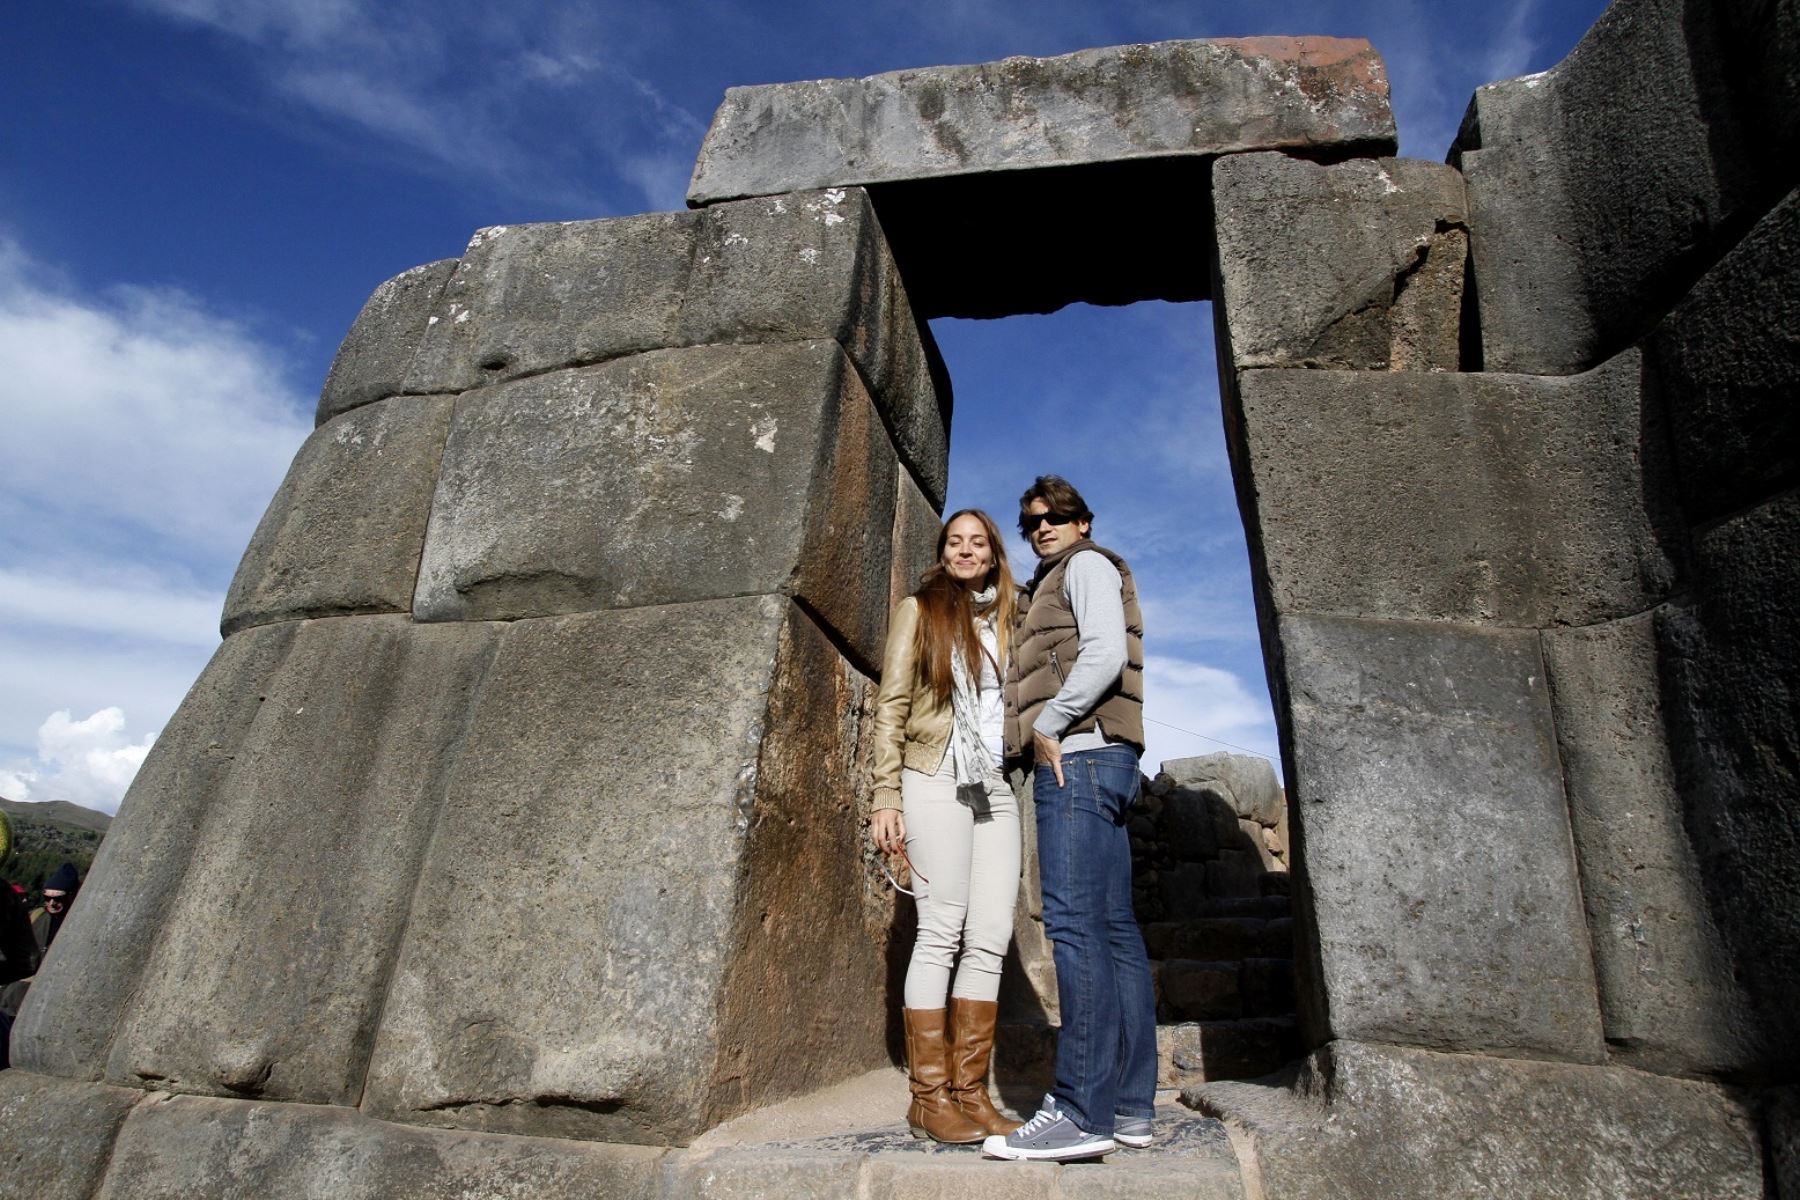 El sitio arqueológico Inca presenta numerosos recintos, plazas interiores. Sacsayhuamán es una maravilla arquitectónica.
Cusco Sacsayhuamán. Foto: ANDINA/Percy Hurtado